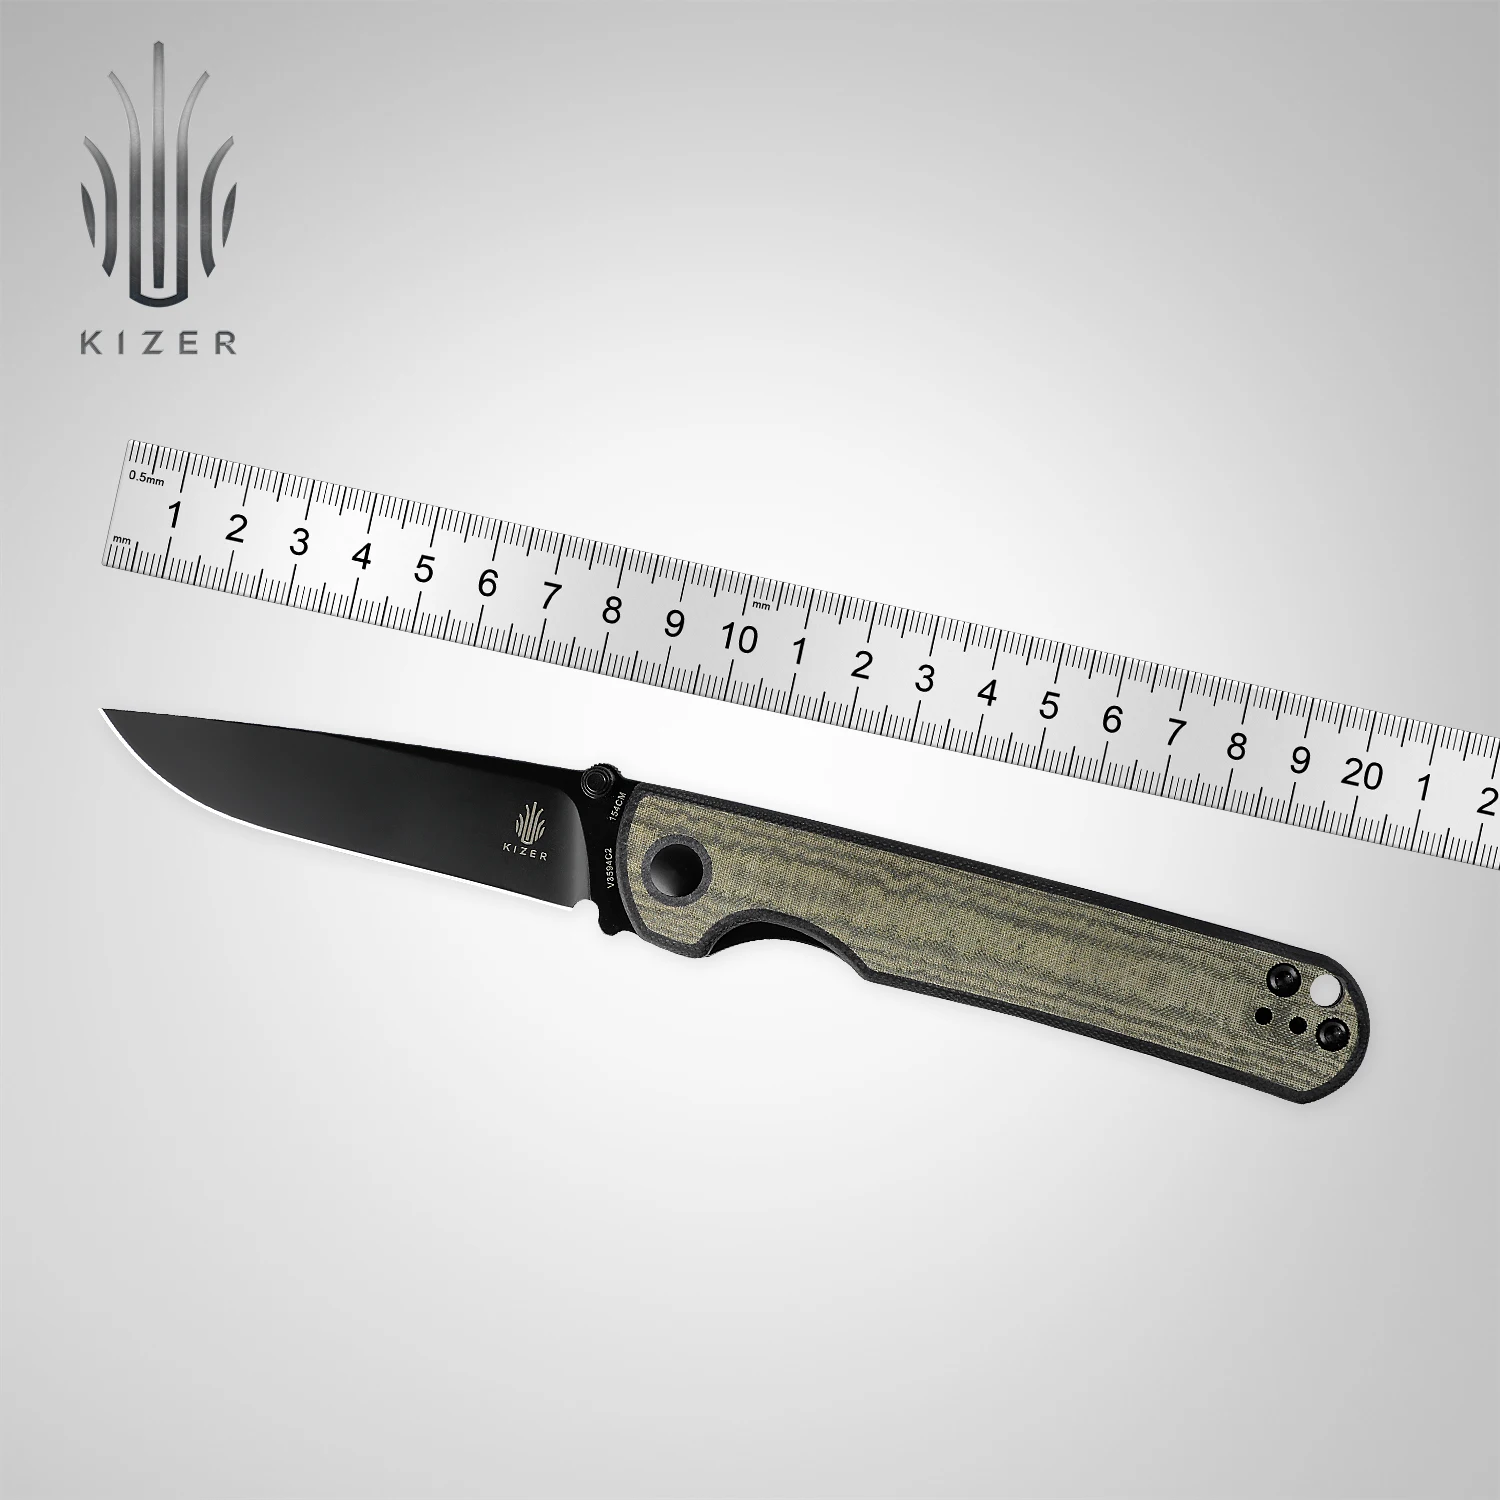 Kizer Survival Pocket Knives V3594FC1/V3594C2 Rapids EDC Knife G10/Micarta Handle Survial Tool 154CM Steel Hunting Knife